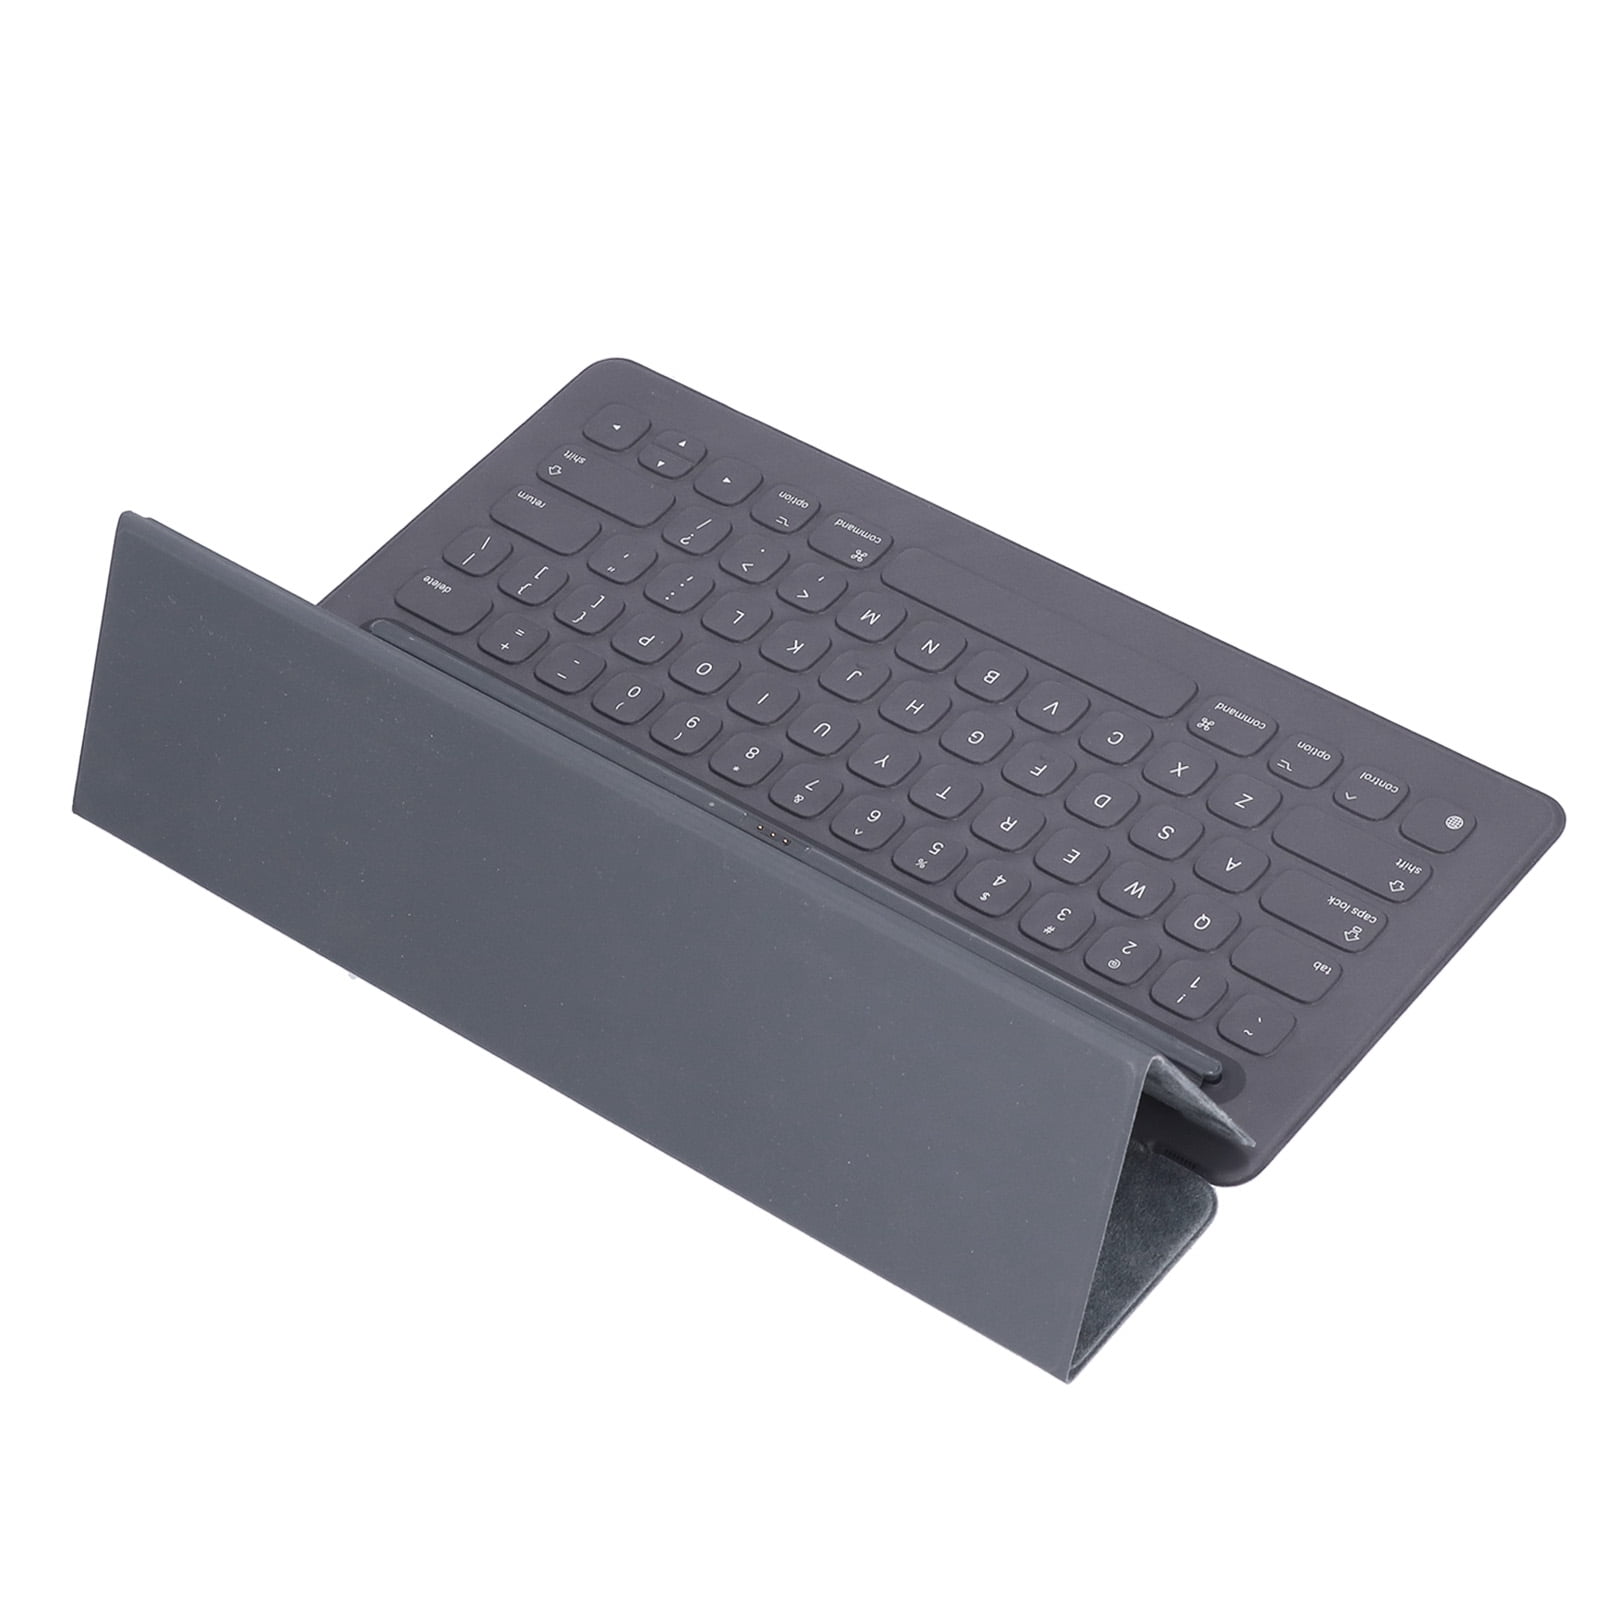 Tebru Smart Wireless Keyboardsmart Keyboardtablet Keyboard Portable